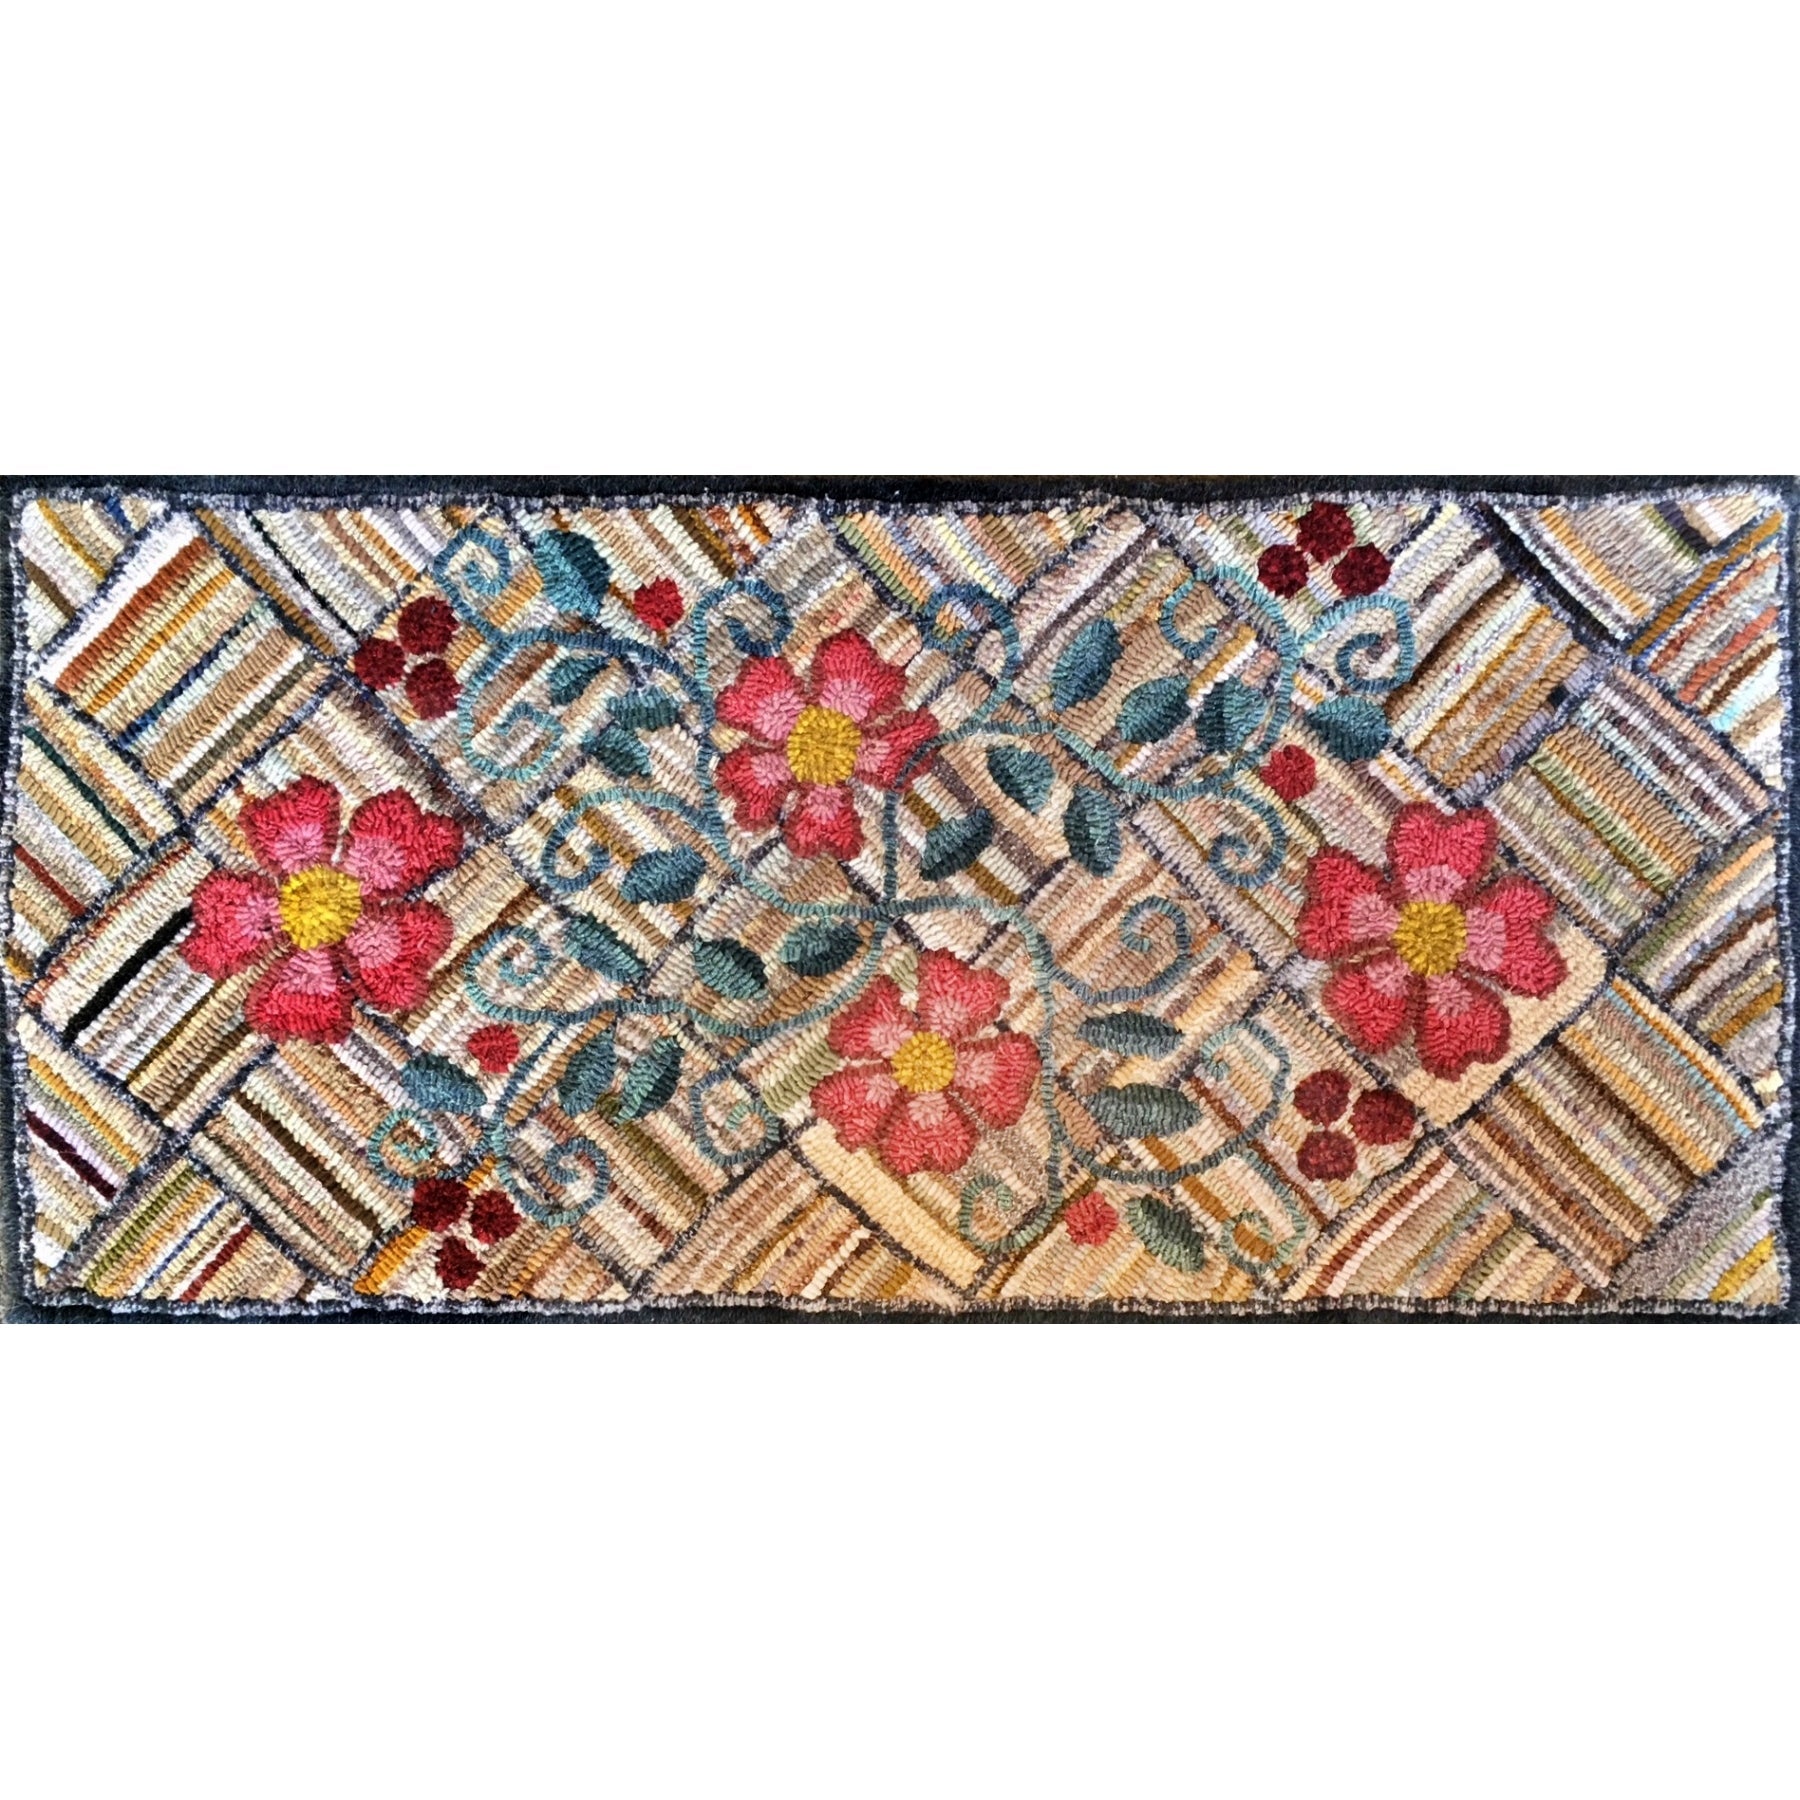 Val's Old Iowa Weave Runner, rug hooked by Valerie Begeman